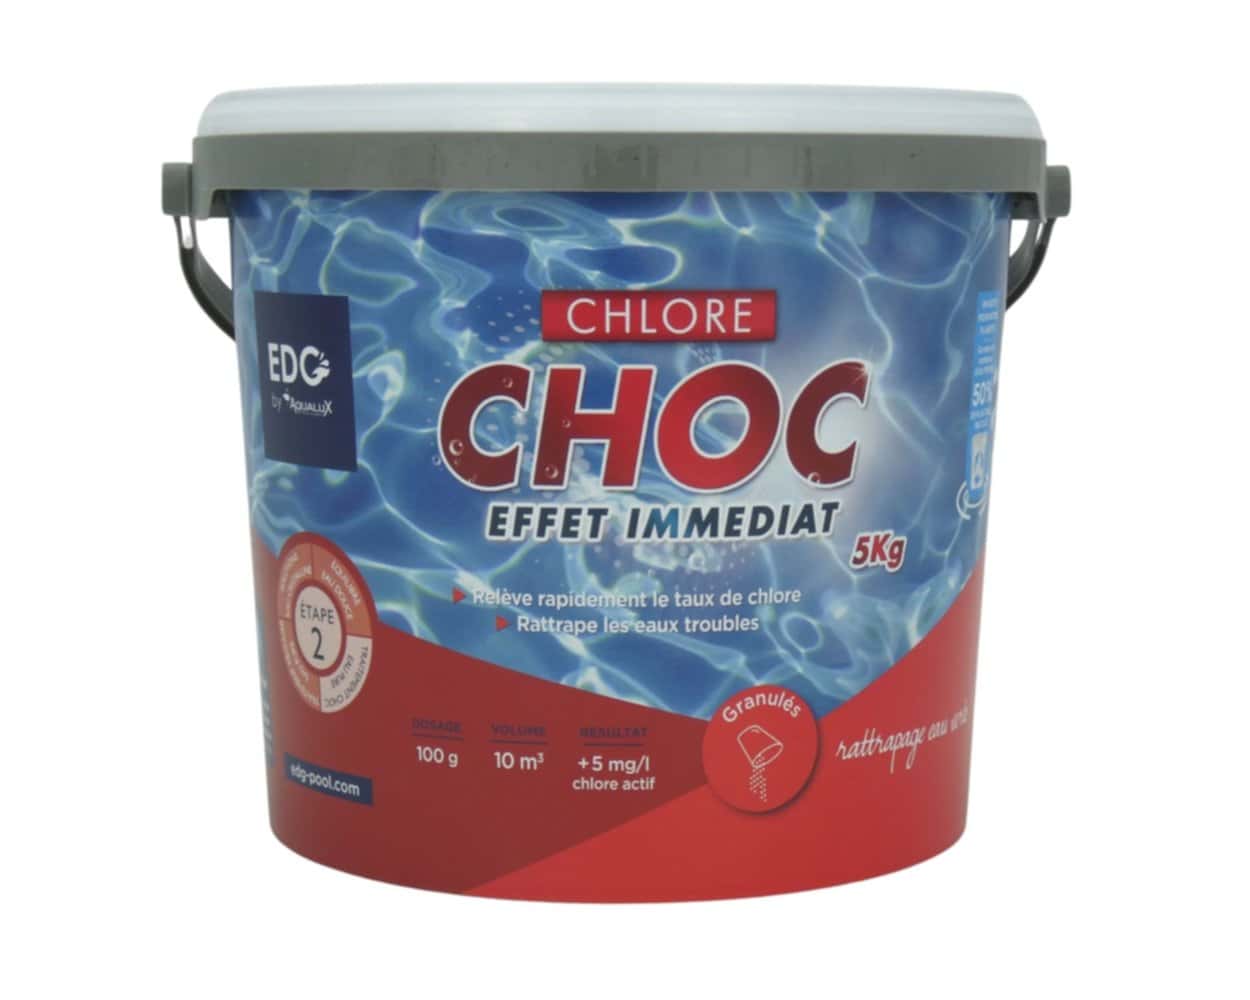 EDG By Aqualux Chlore Choc Granulés - Seau 5 kg pas cher 